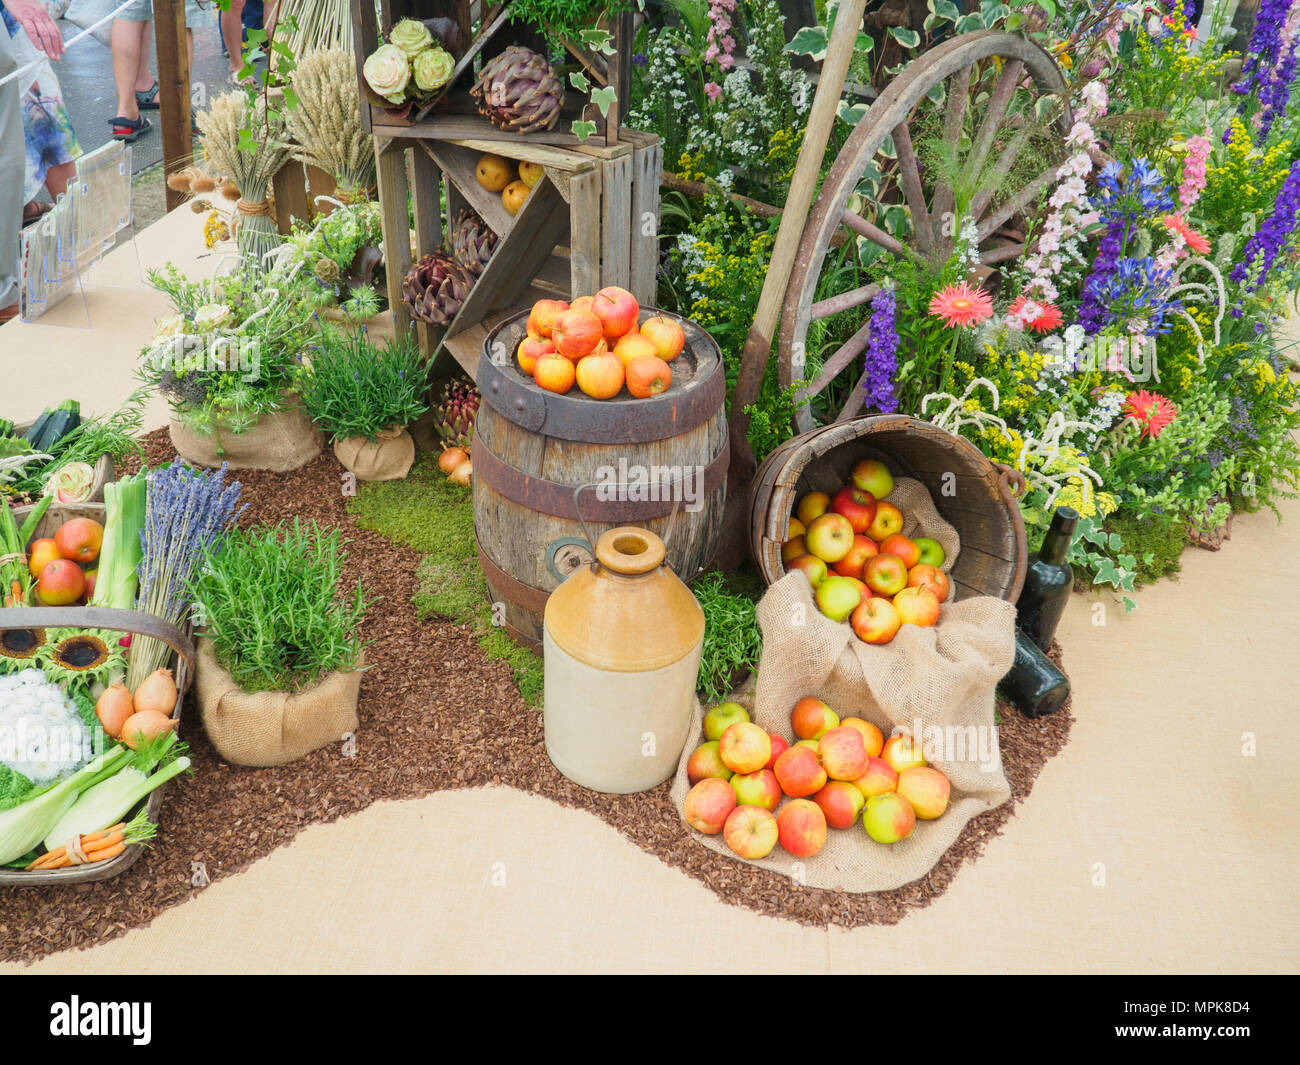 RHS Chelsea Flower Show 2017. Eine schöne Frucht, vegs, Pflanzen und Blumen Anzeige der großen Pavillon. Stockfoto